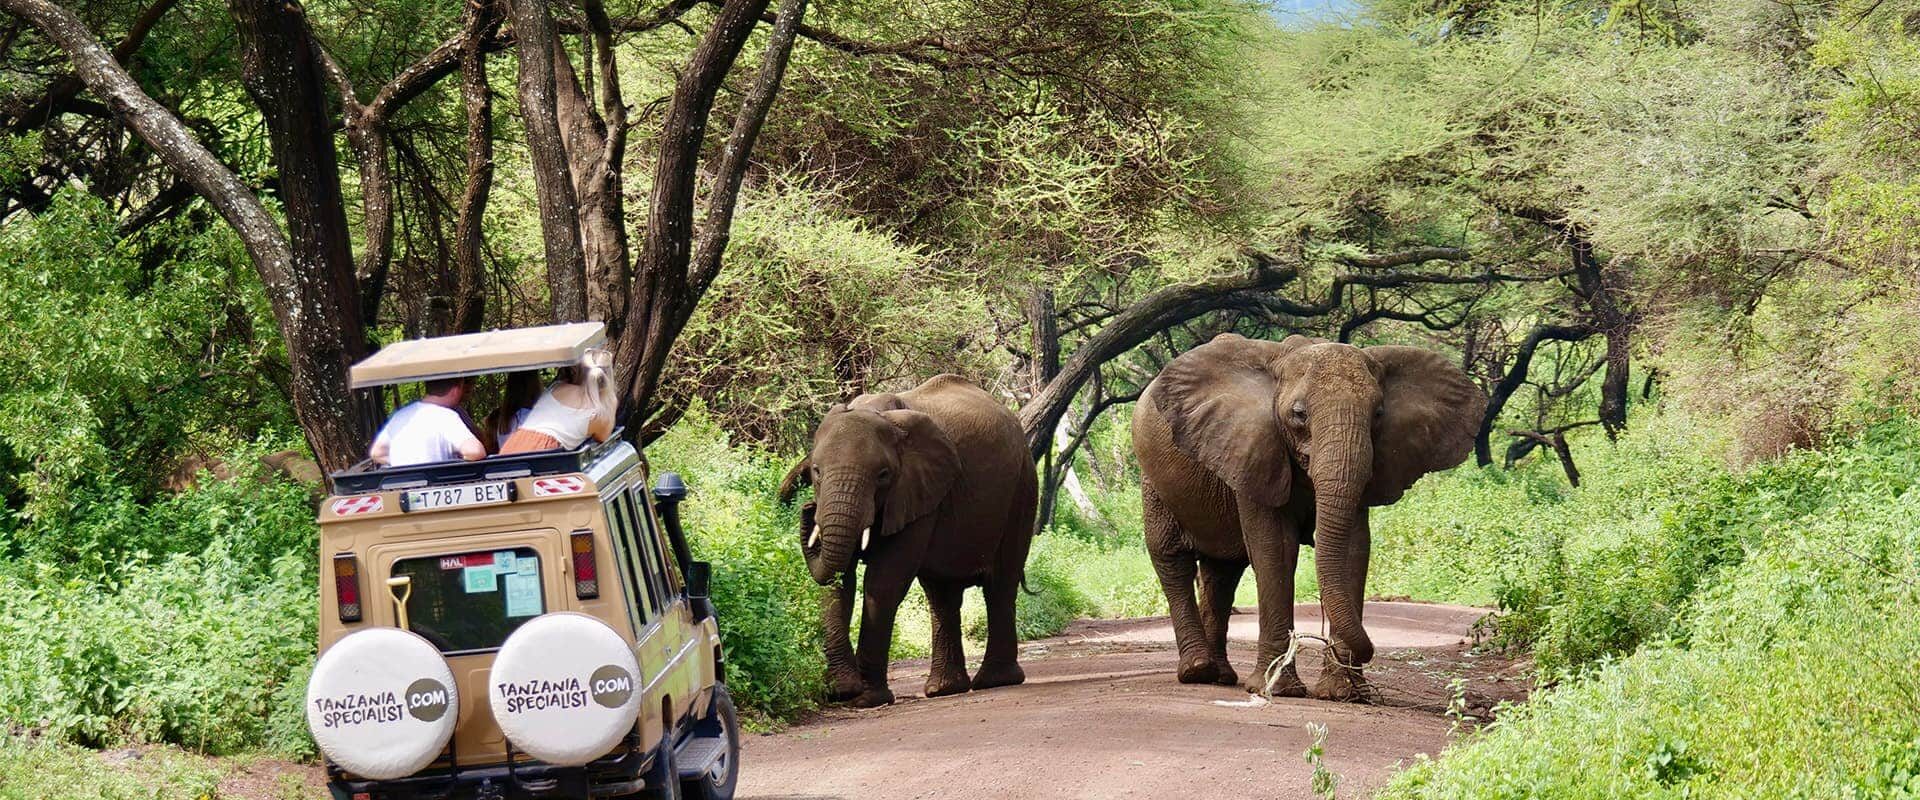 Safari-jeep, kijkend naar olifanten